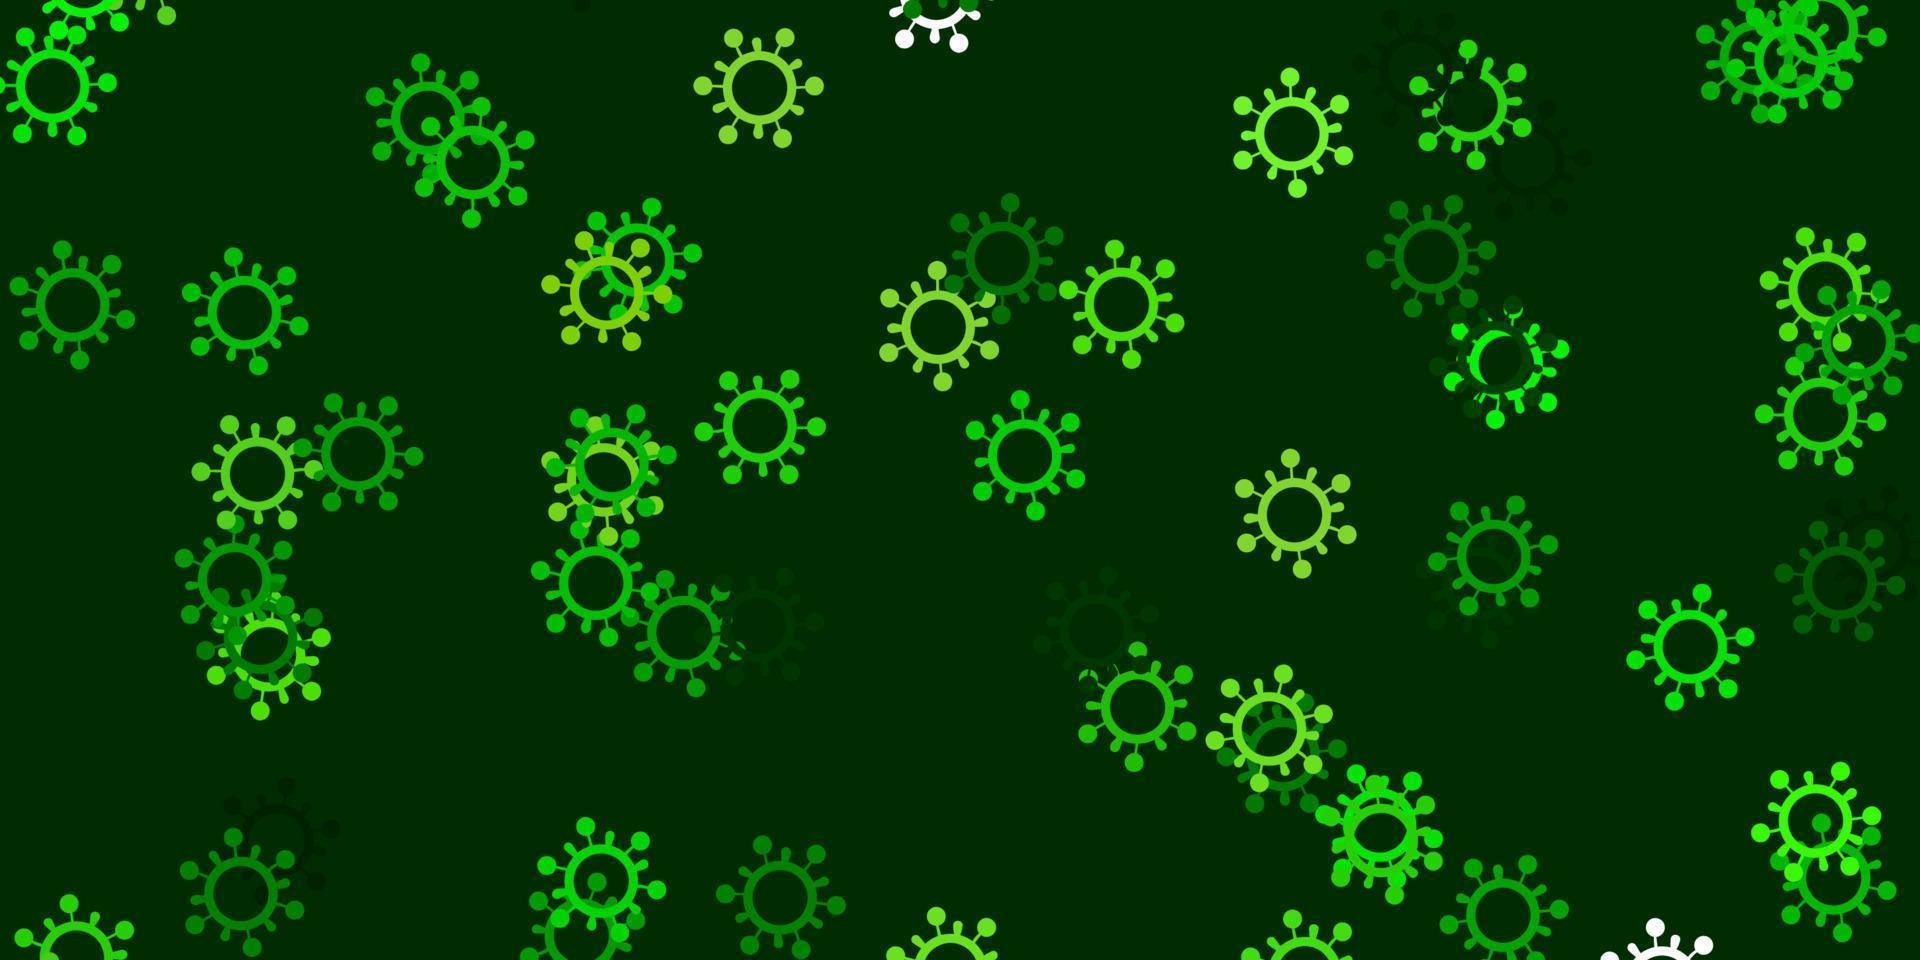 pano de fundo de vetor verde e amarelo claro com símbolos de vírus.